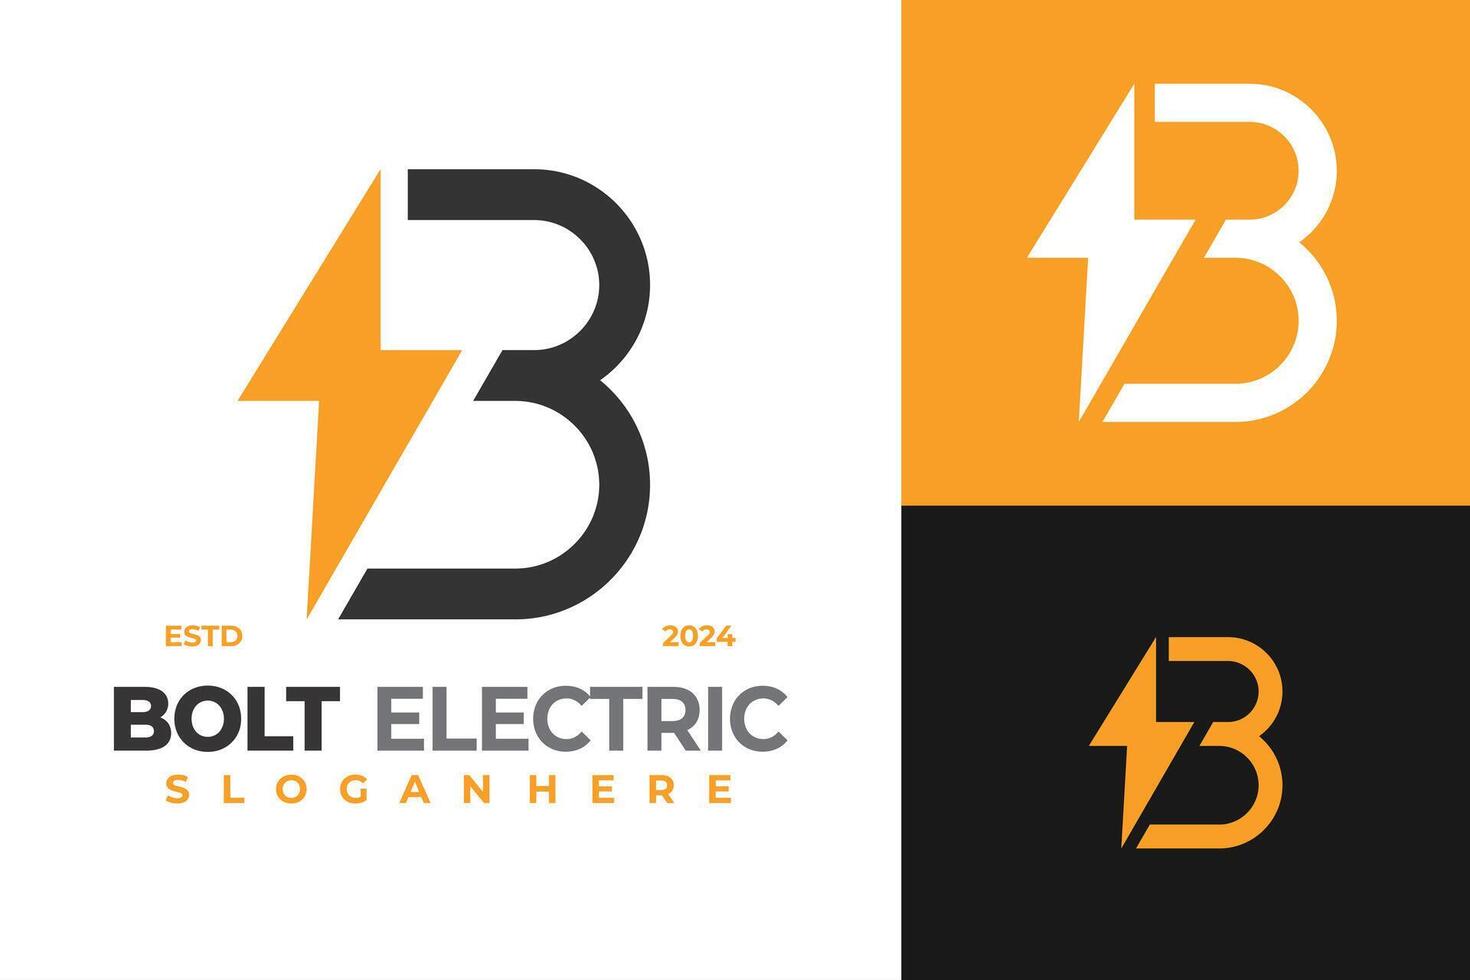 Letter B Bolt Electric logo design symbol icon illustration vector